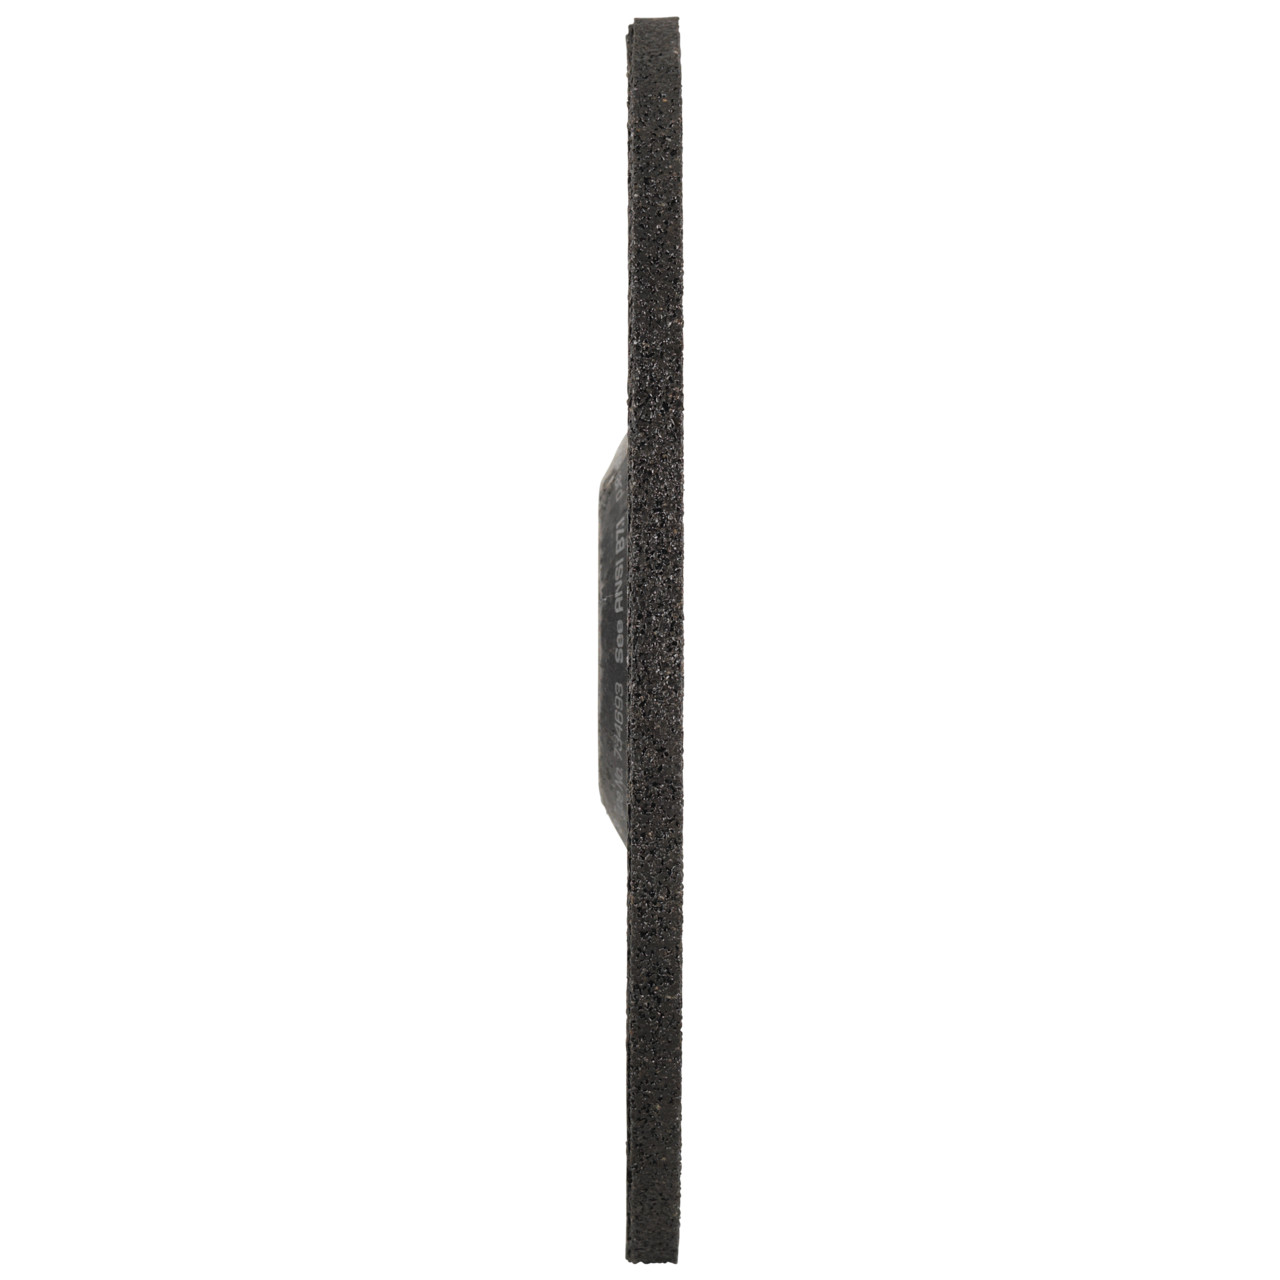 TYROLIT Schruppscheibe DxUxH 178x8x22,23 FASTCUT Basic für Stahl und Edelstahl, Form: 27C - gekröpfte Ausführung, Art. 34468720